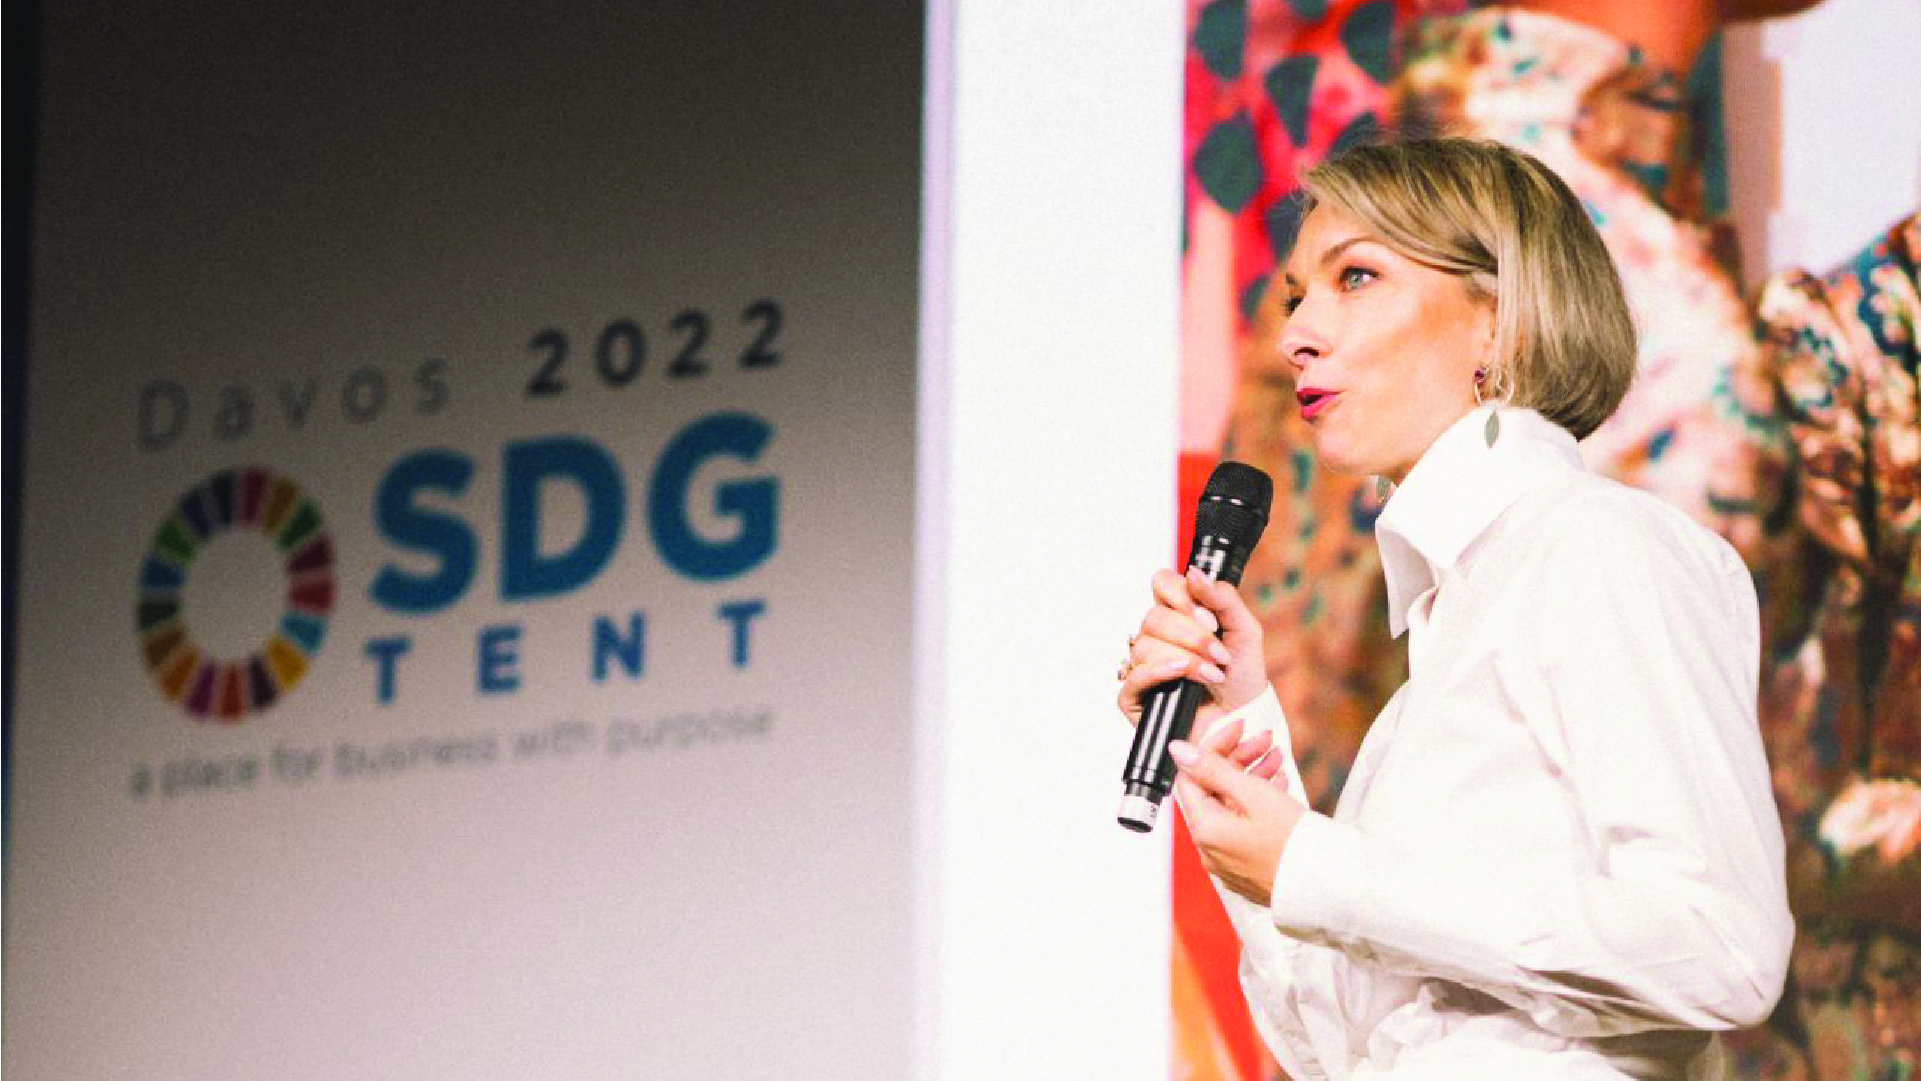 Nicky Myny Art at World Economic Forum 2022, Davos Switzerland